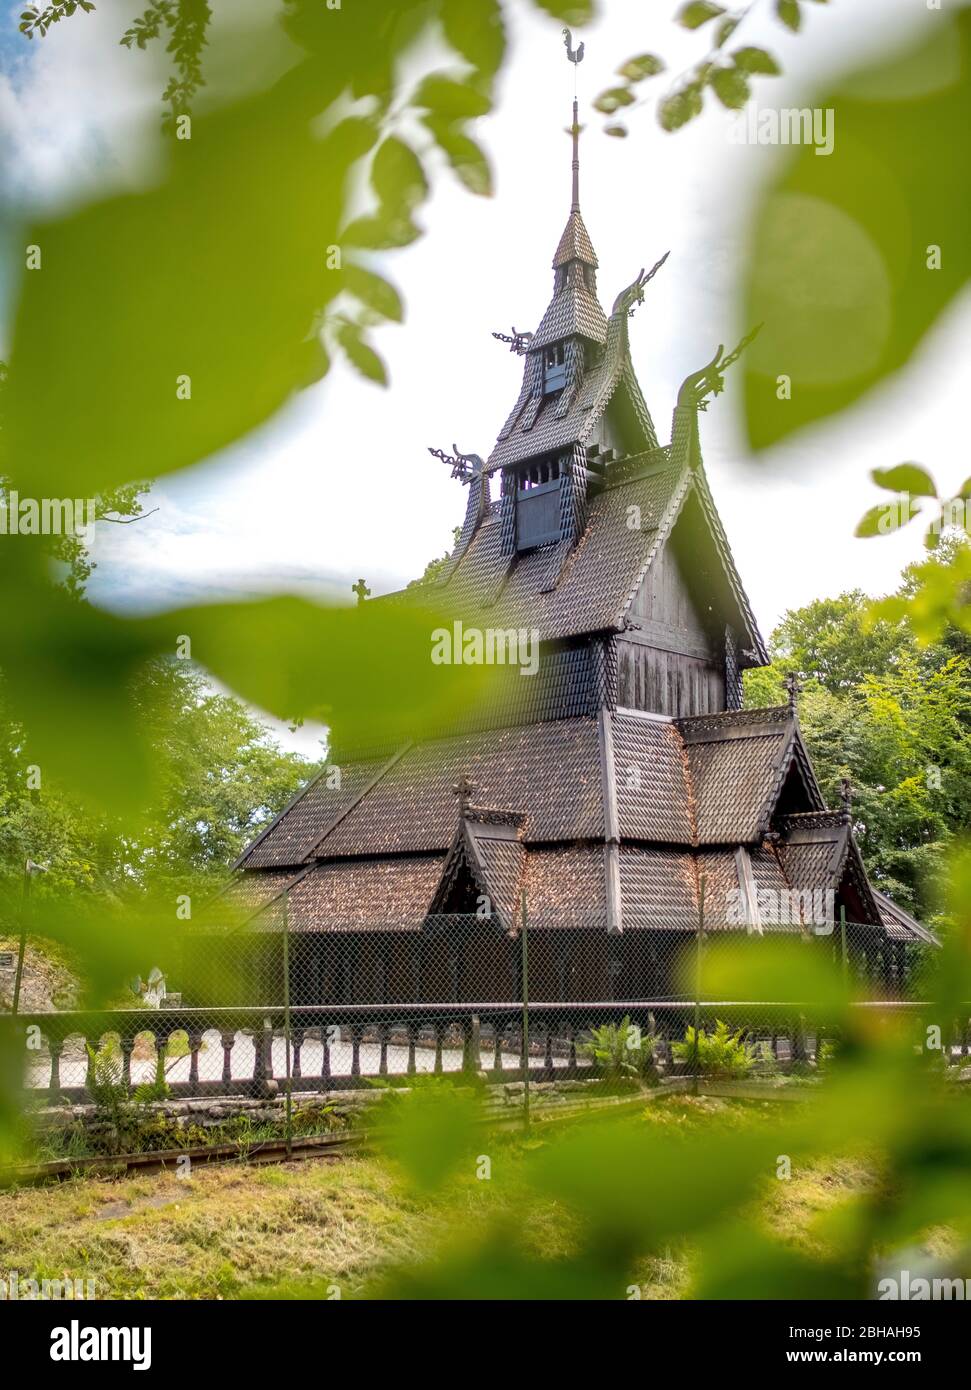 Storica chiesa a doghe in legno Fantoft guardando attraverso le foglie di un albero, Fantoftvegen Paradis, Hordaland, Norvegia, Scandinavia, Europa Foto Stock